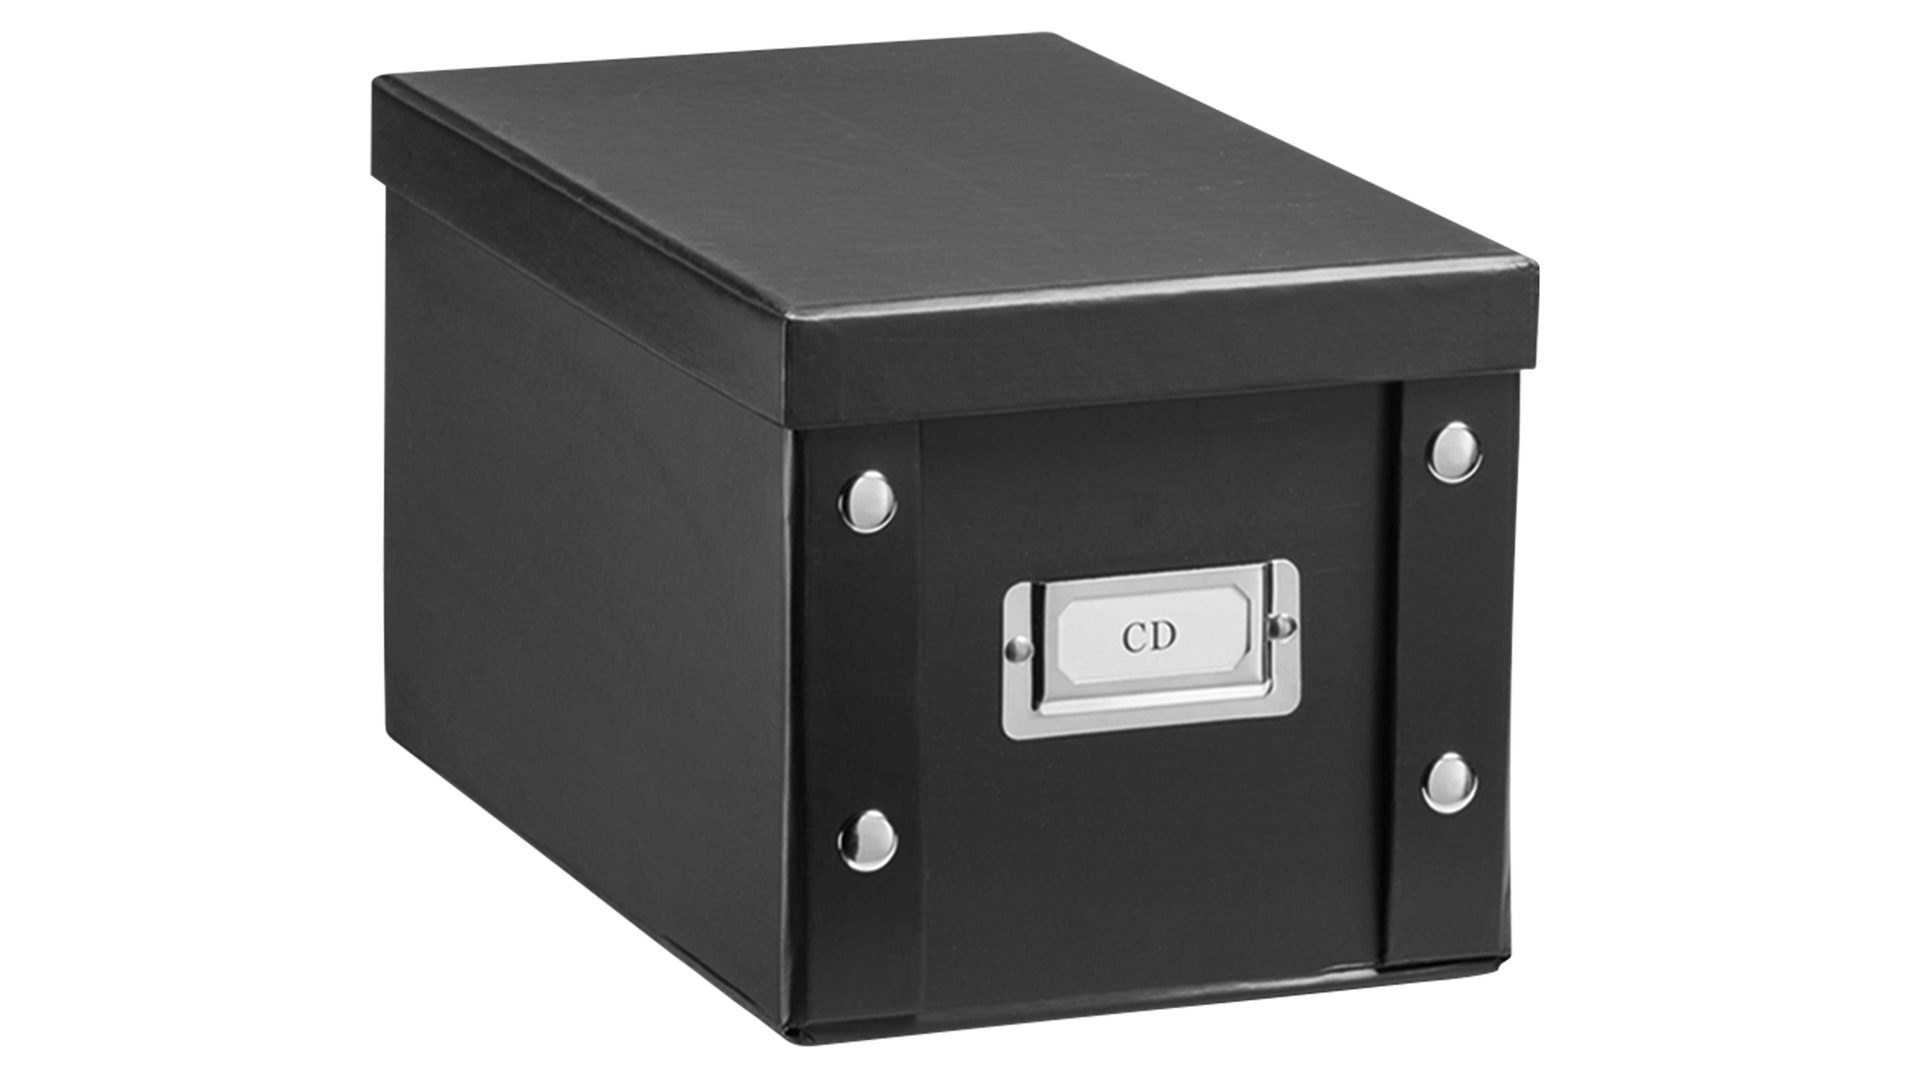 Aufbewahrungsbox Zeller present aus Karton / Papier / Pappe in Schwarz zeller CD-Aufbewahrungsbox schwarze Pappe - ca. 28 x 17 cm